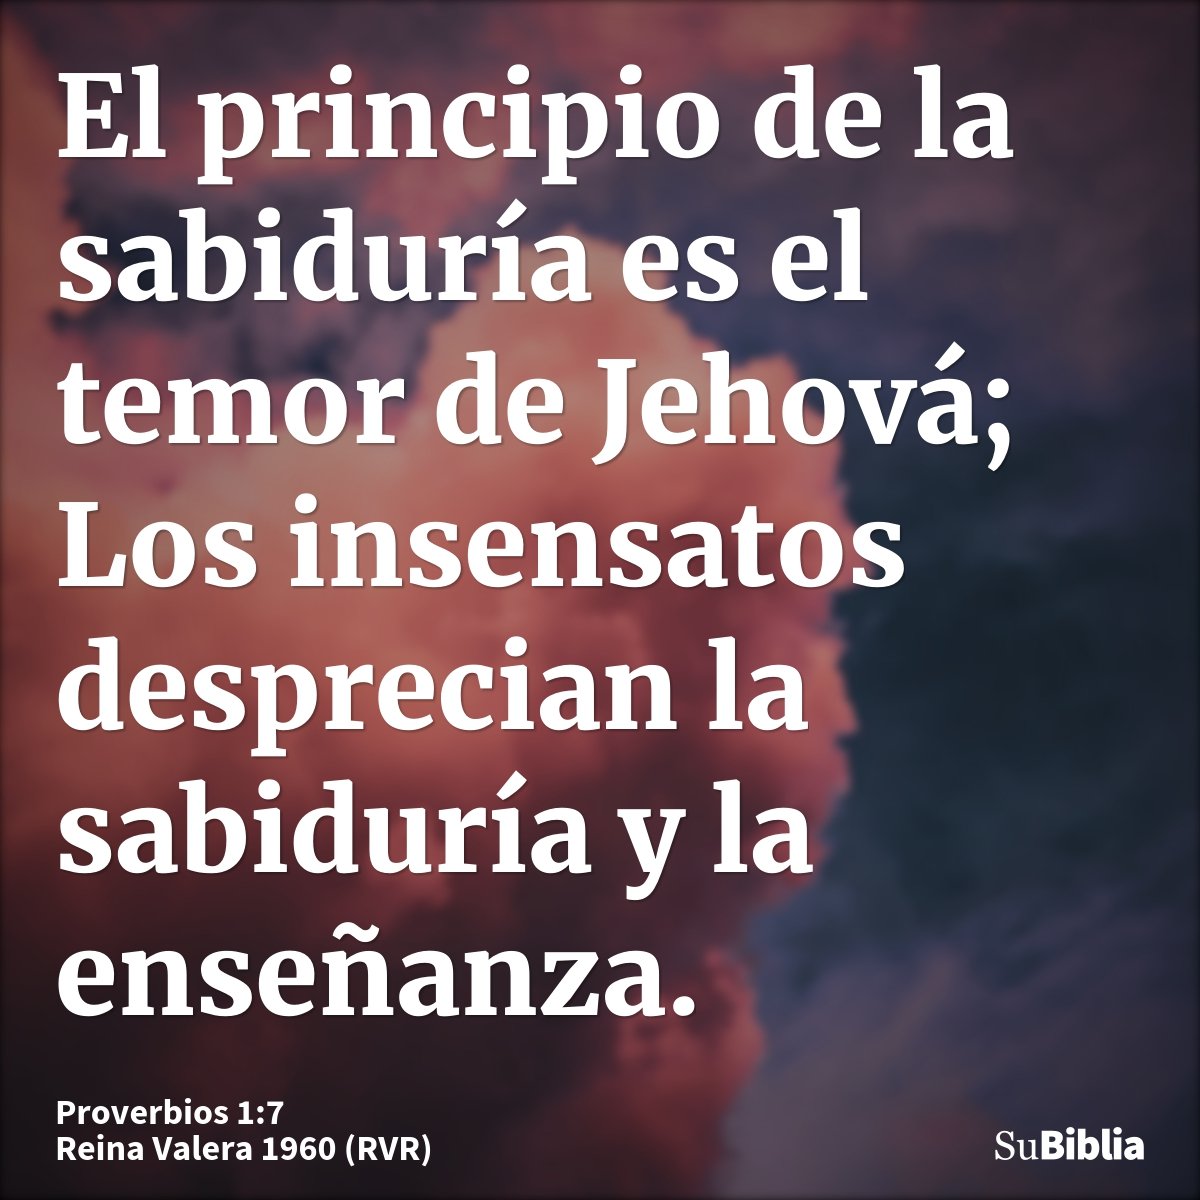 El principio de la sabiduría es el temor de Jehová; Los insensatos desprecian la sabiduría y la enseñanza.